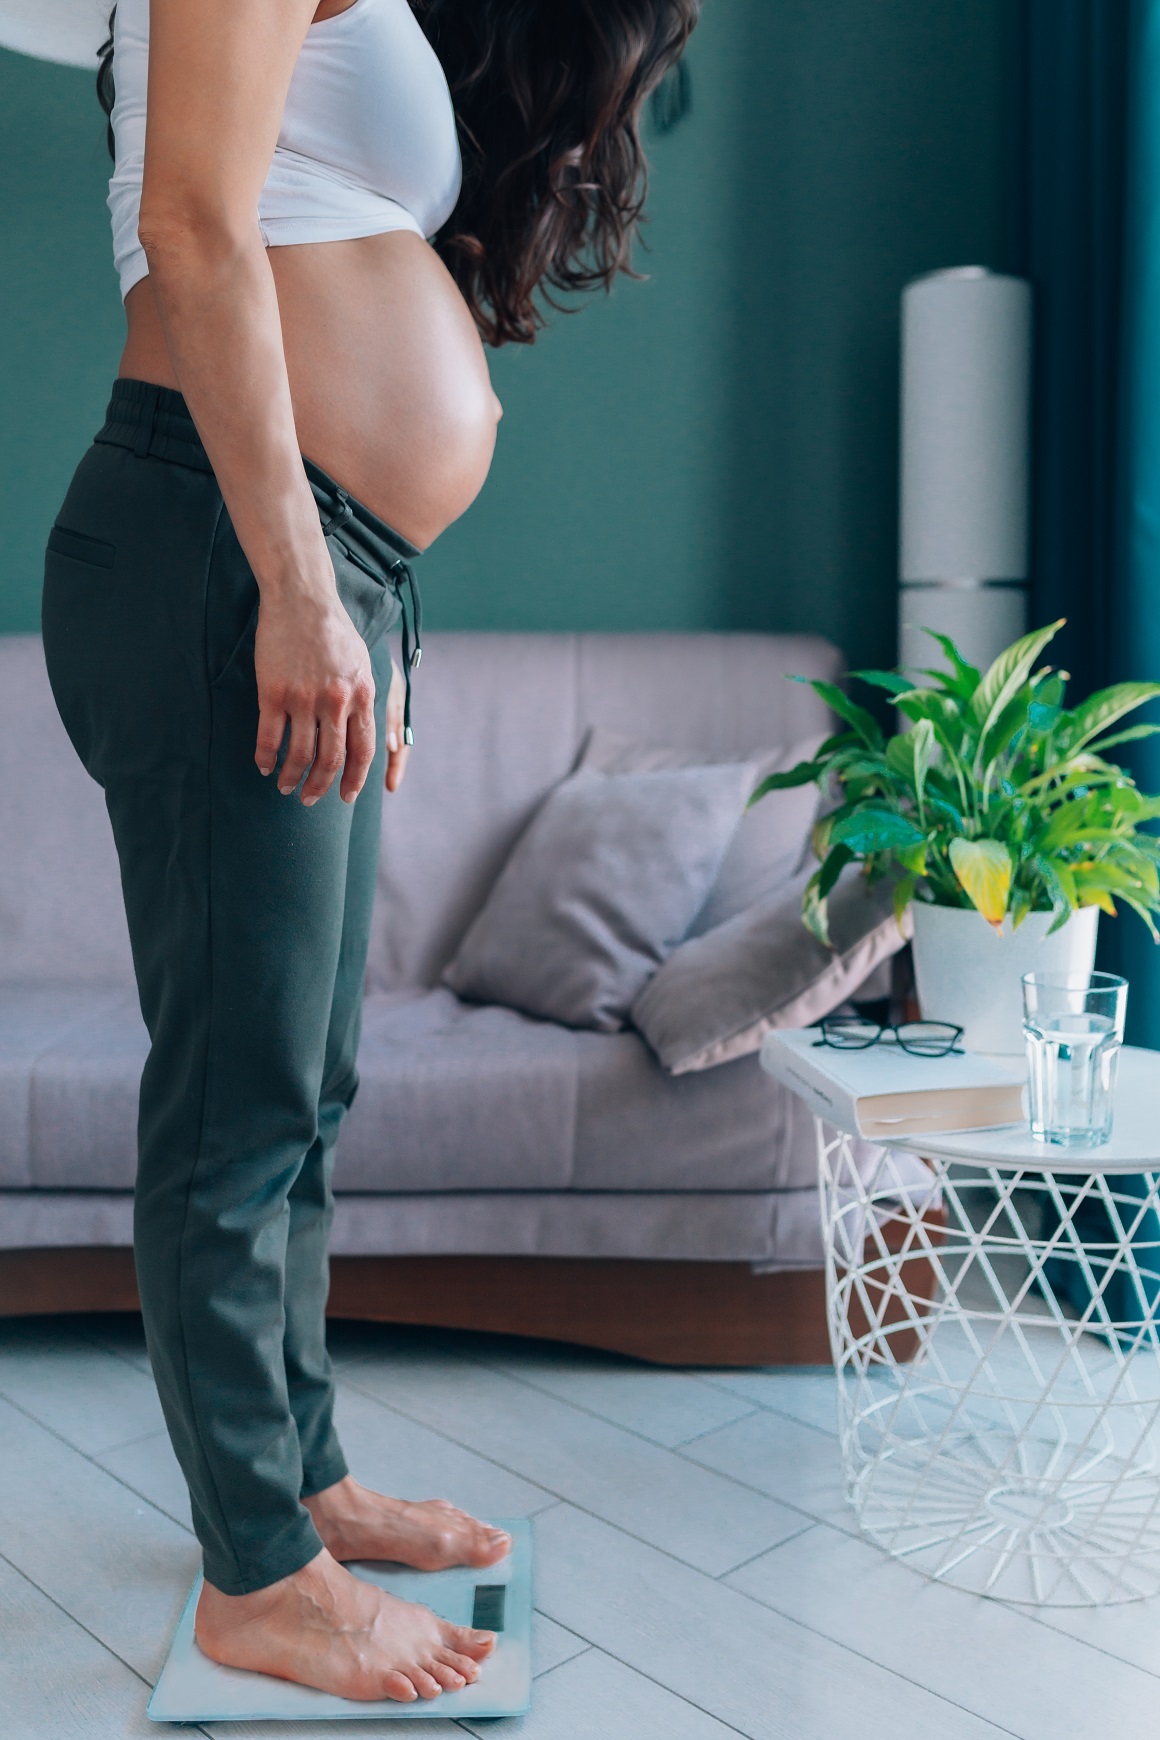 Debljanje tijekom trudnoće je normalno te se smatra da žene u prosjeku dobivaju između 9 – 17 kg u trudnoći